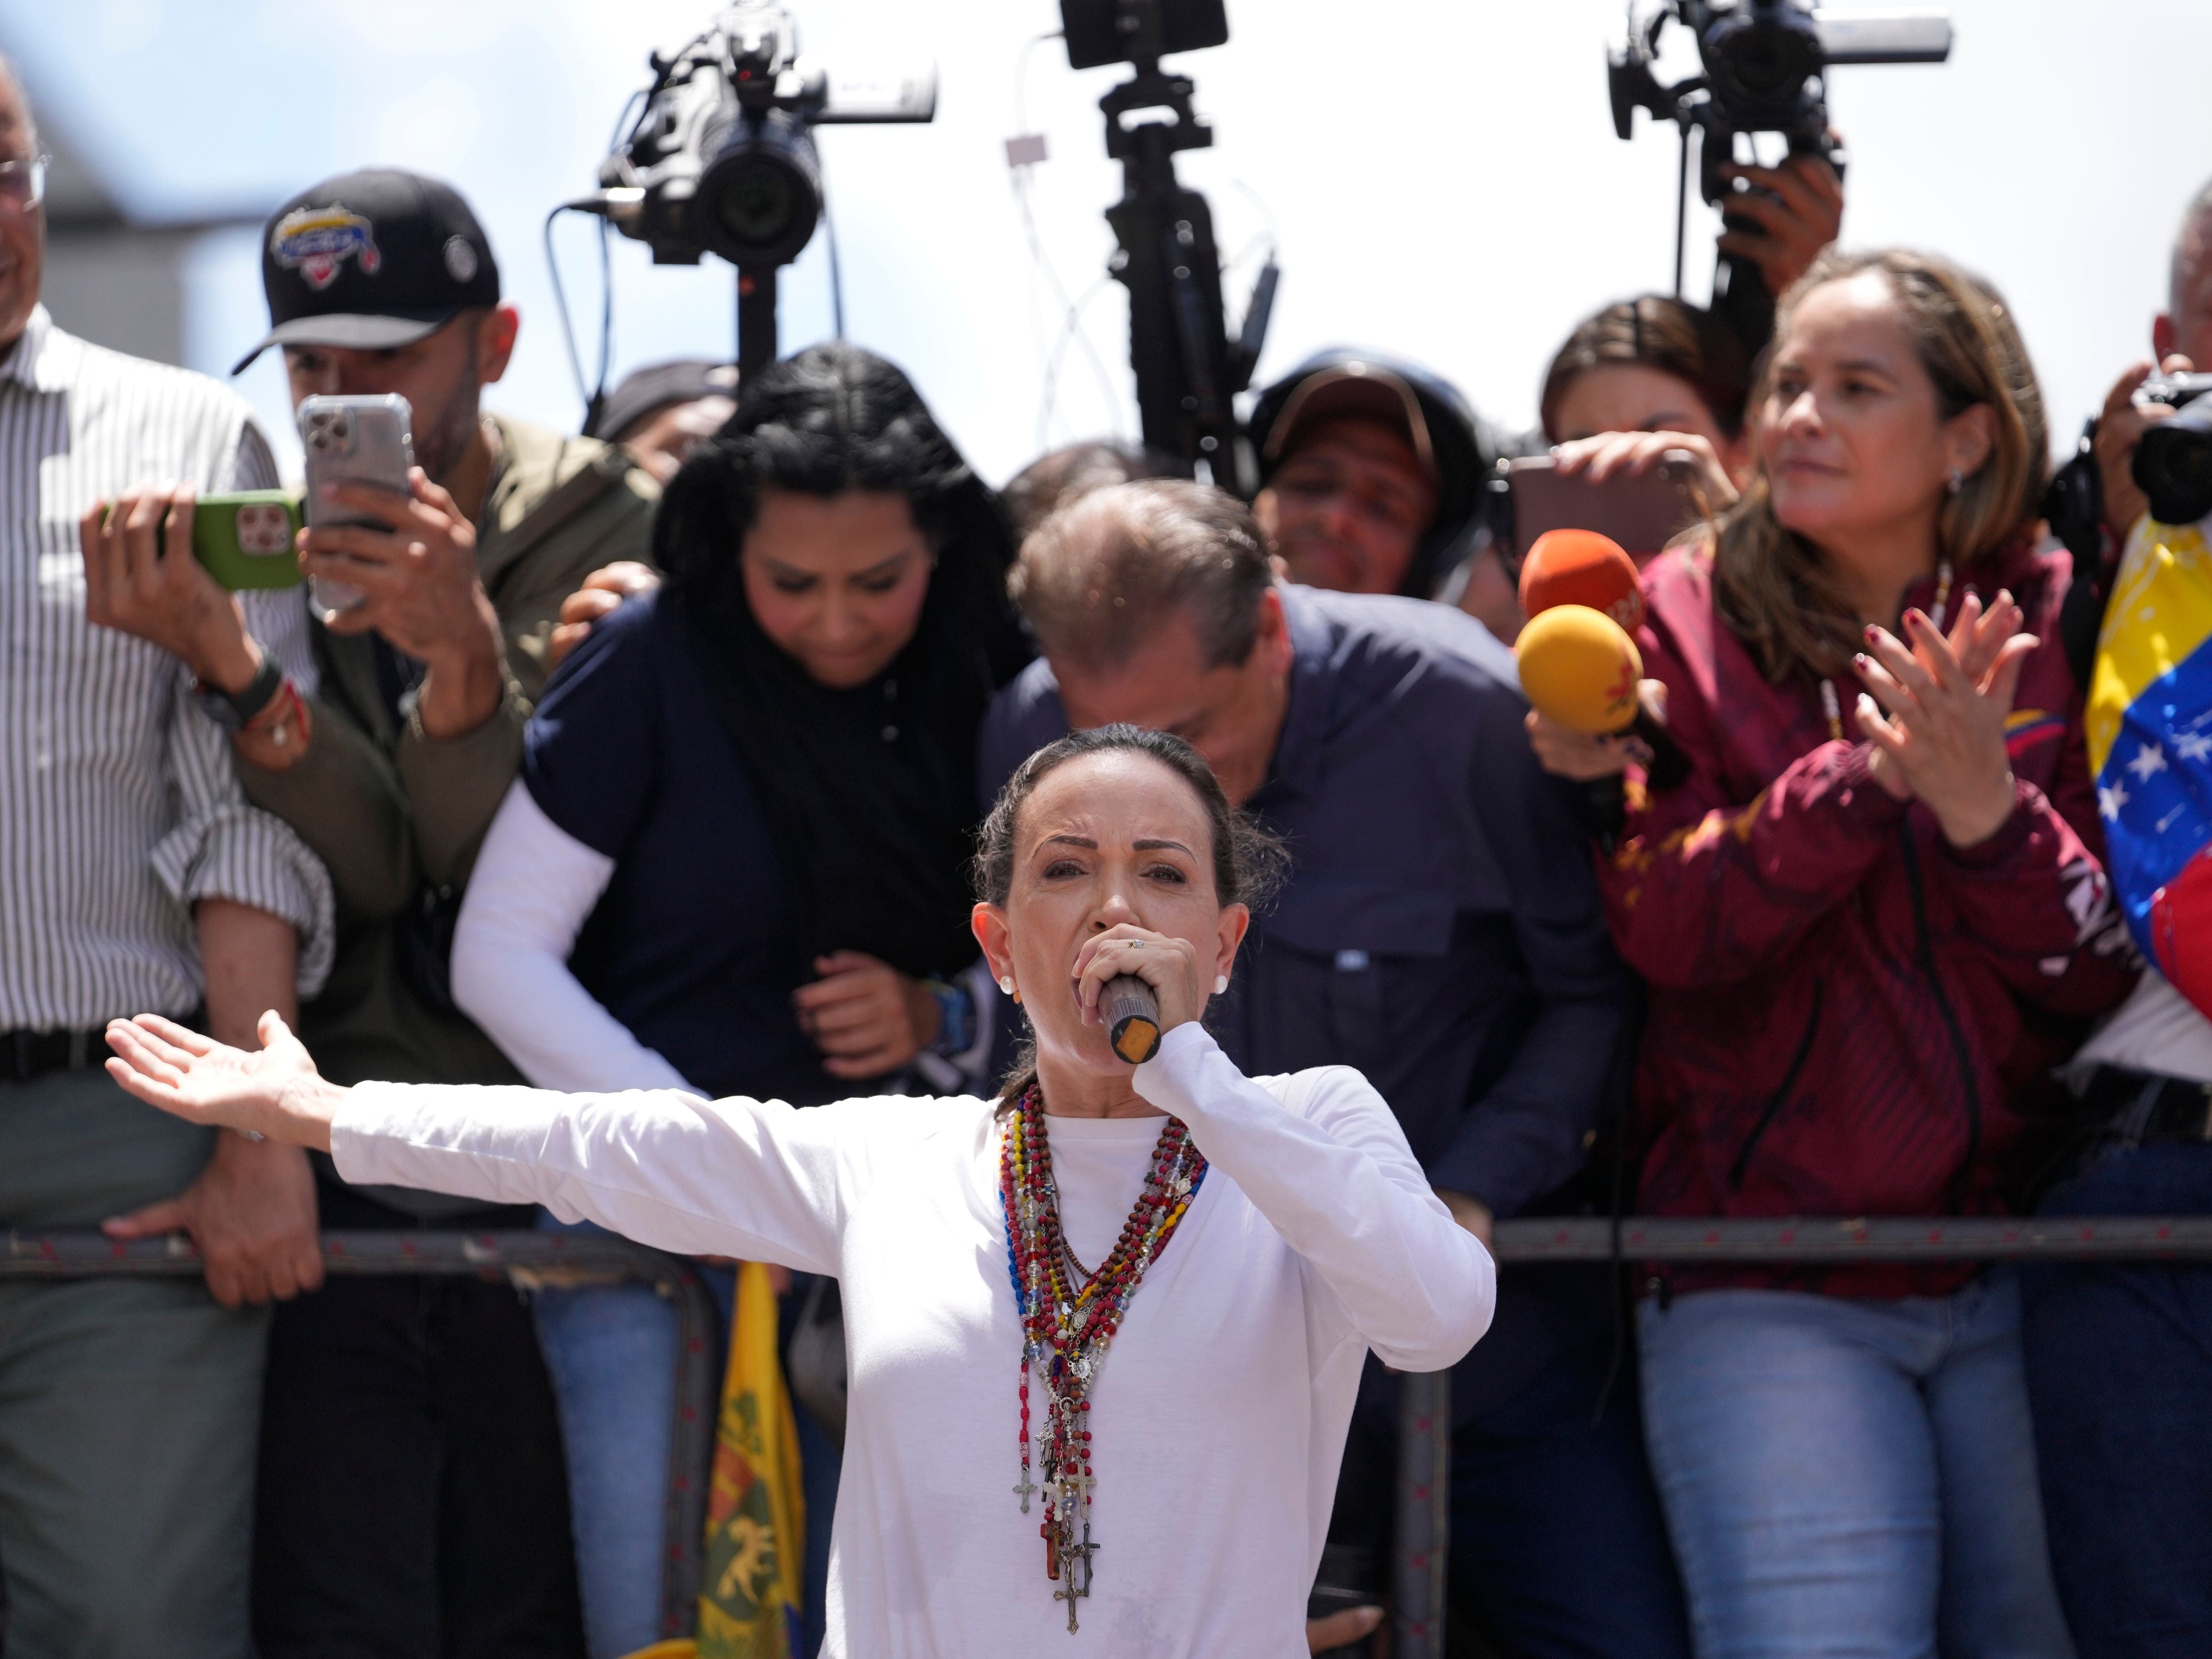 ‘Never has regime been so weak’: Venezuelan opposition leader rallies supporters